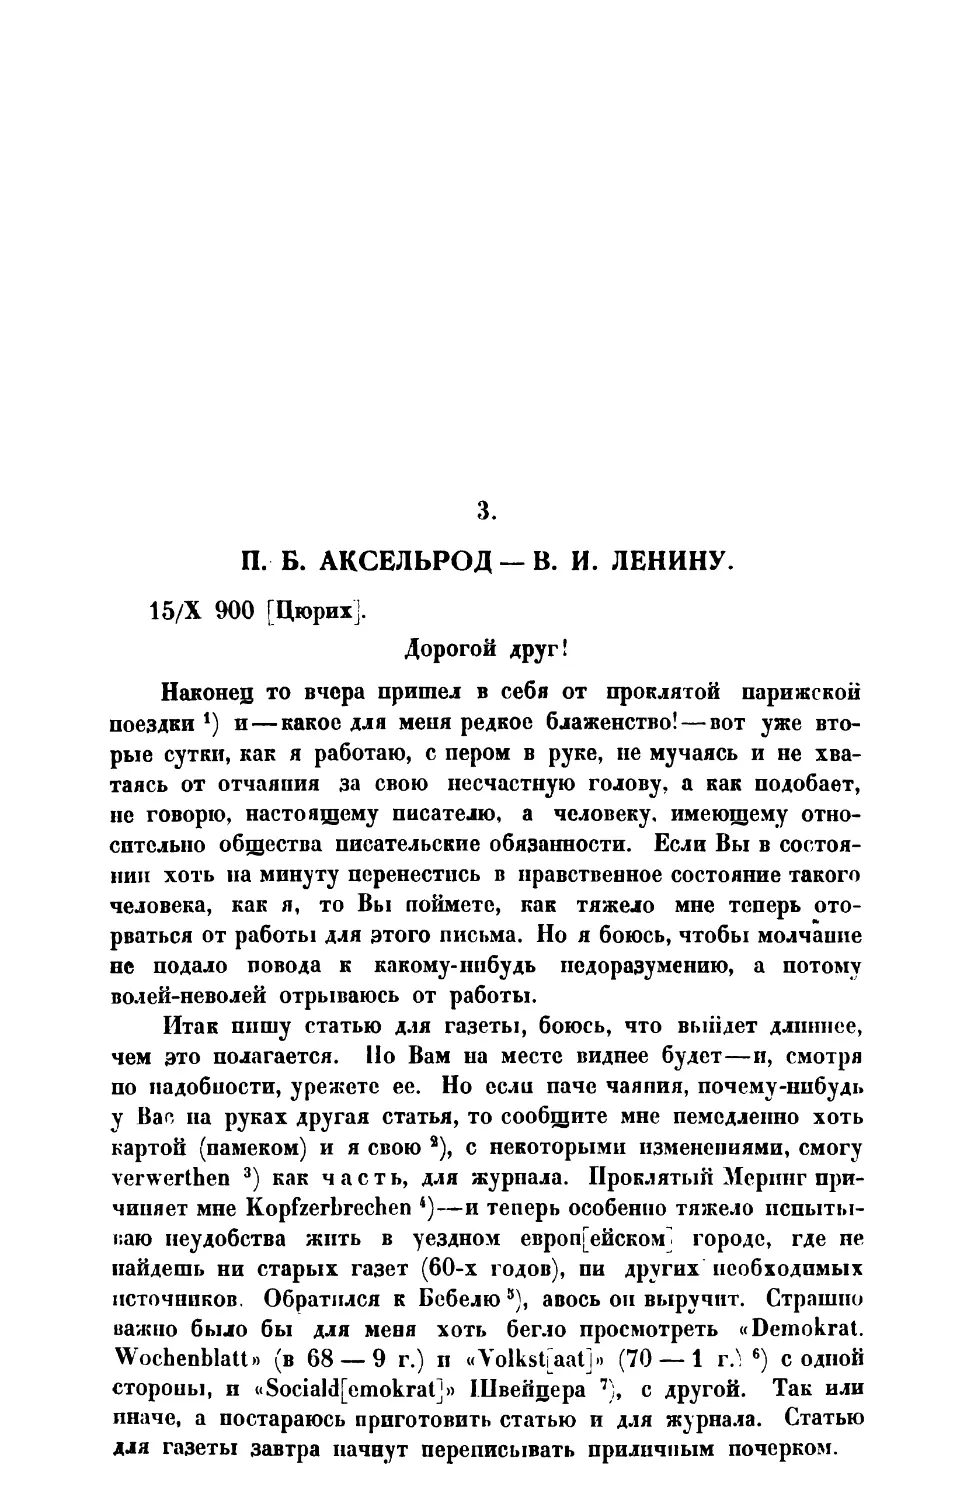 3. П. Б. Аксельрод. — Письмо В. И. Ленину от 15 X 1900 г.